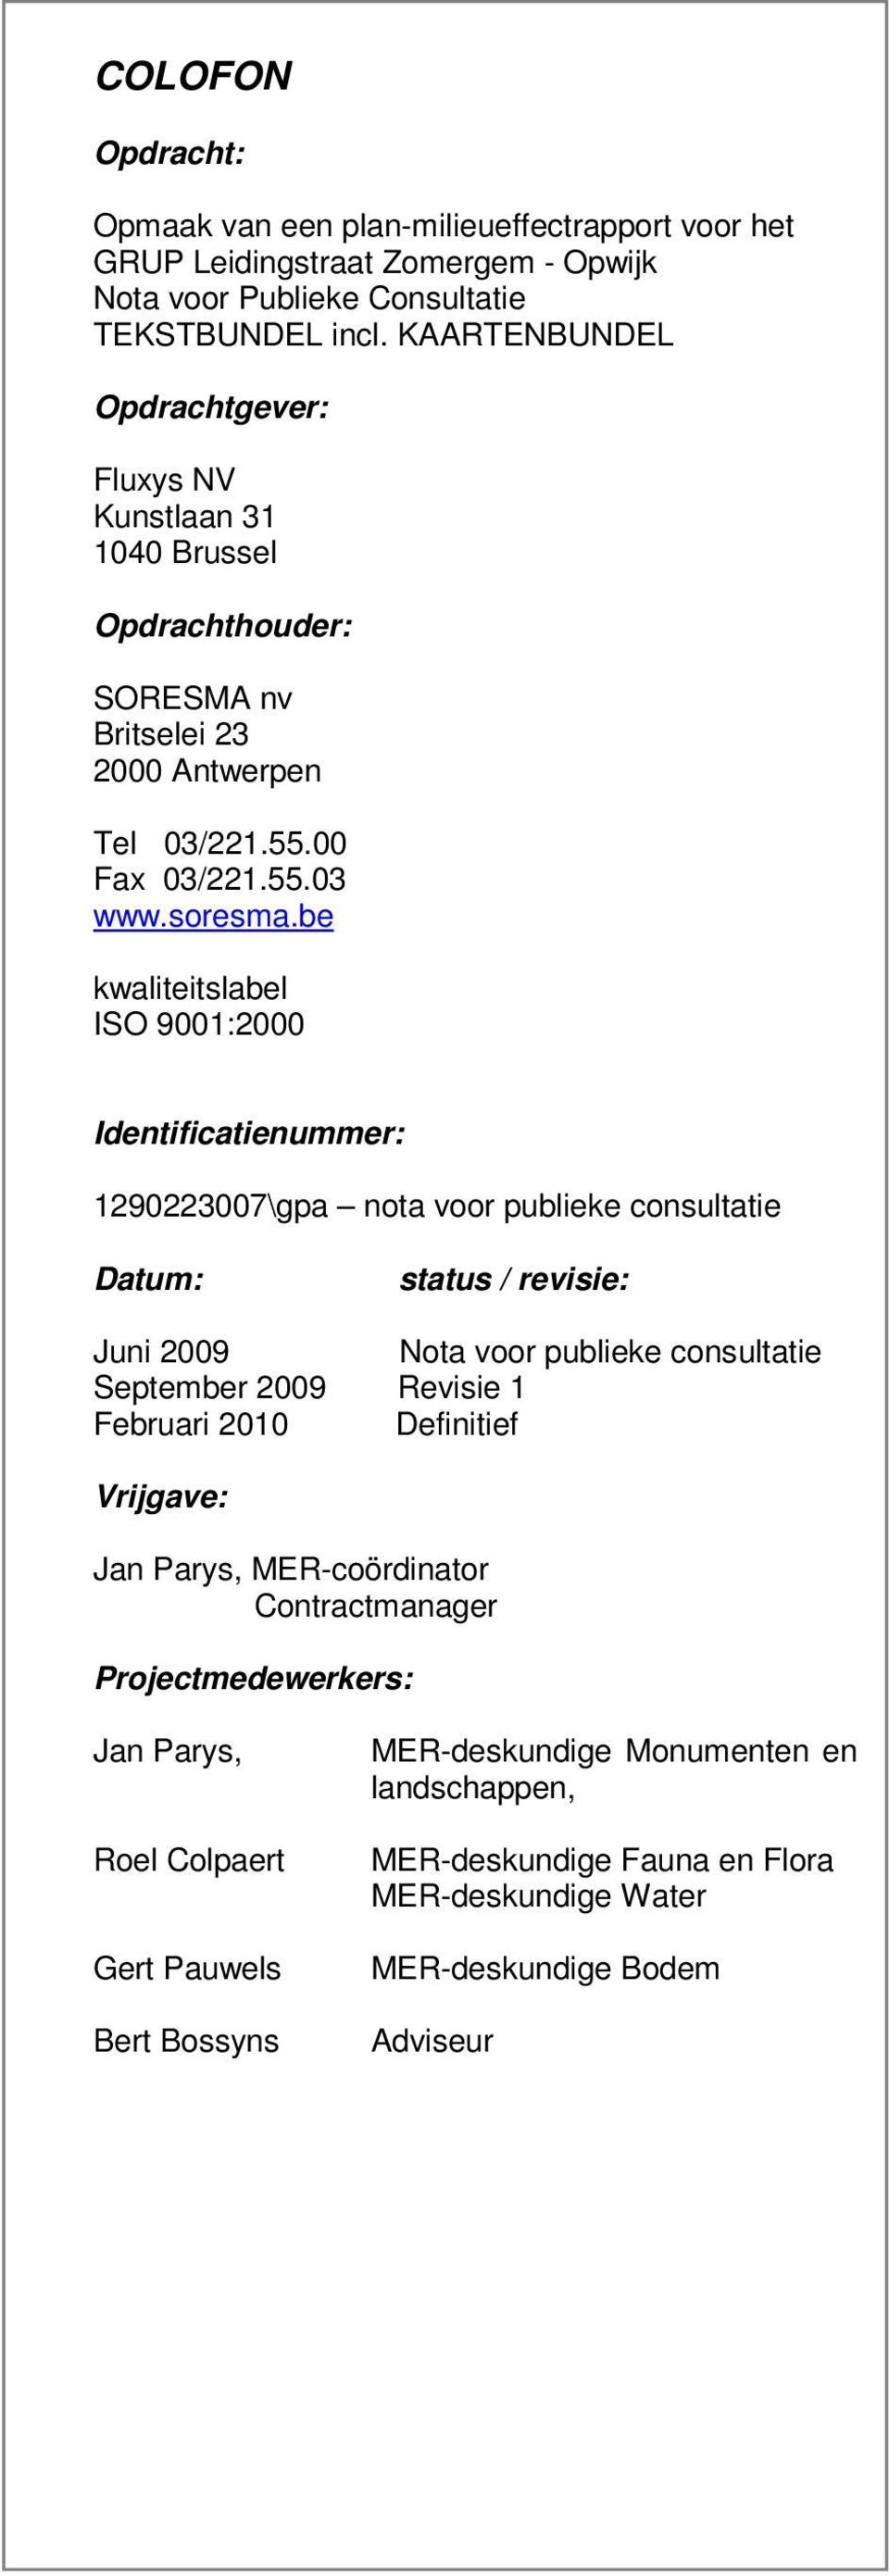 be kwaliteitslabel ISO 9001:2000 Identificatienummer: 1290223007\gpa nota voor publieke consultatie Datum: status / revisie: Juni 2009 Nota voor publieke consultatie September 2009 Revisie 1